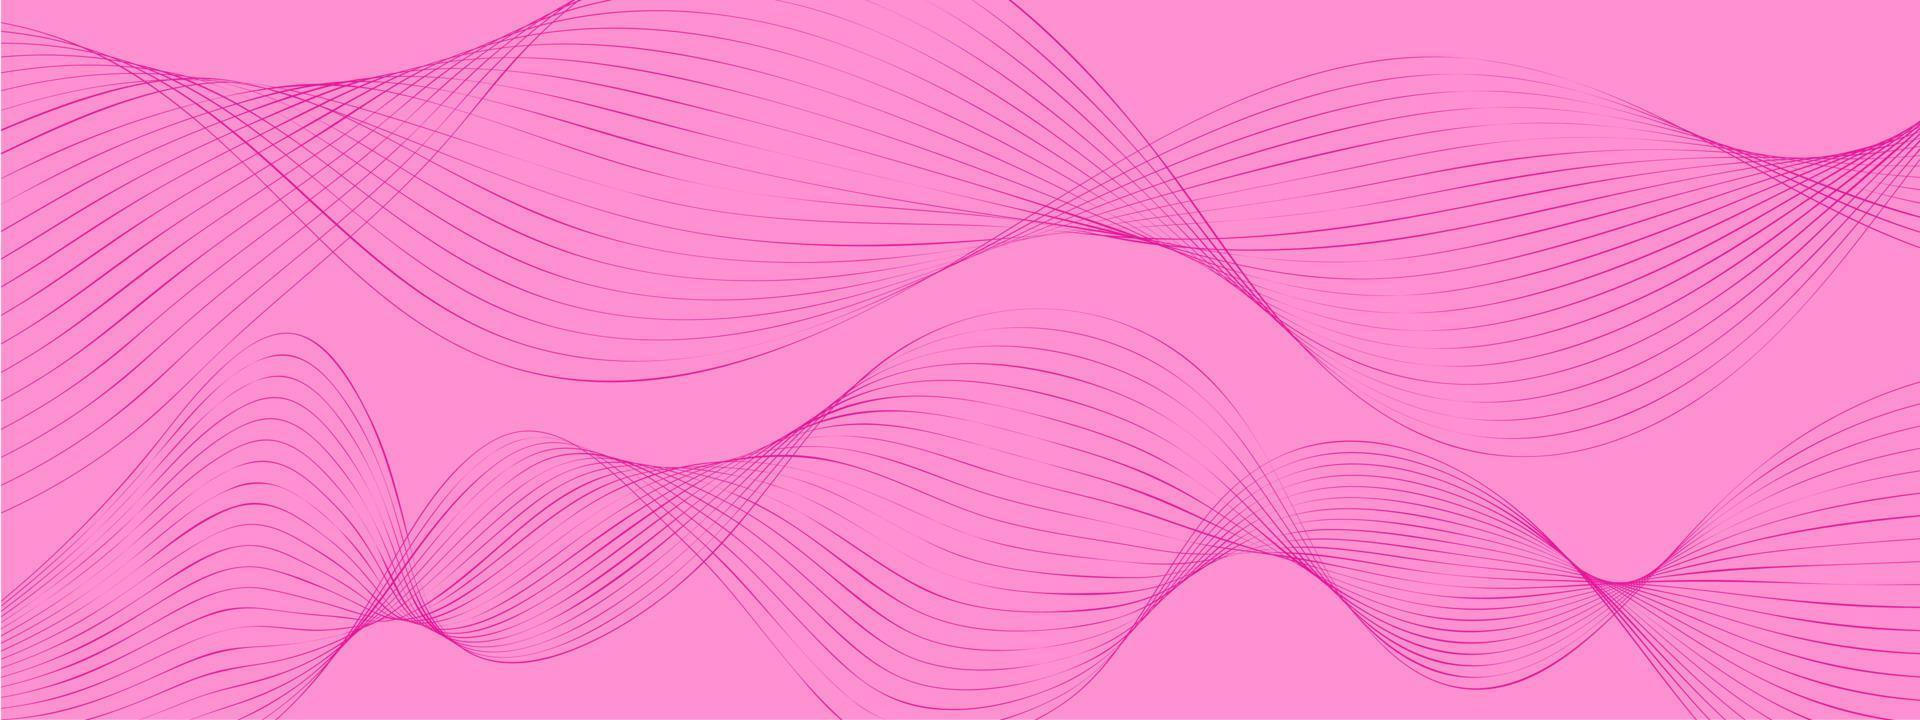 fond violet rose dynamique minimal, fond d'ondes numériques créatives abstraites, vecteur de concept de page de destination moderne. ondes lisses et lumineuses pour brochure, site Web, conception de flyer, bannière.